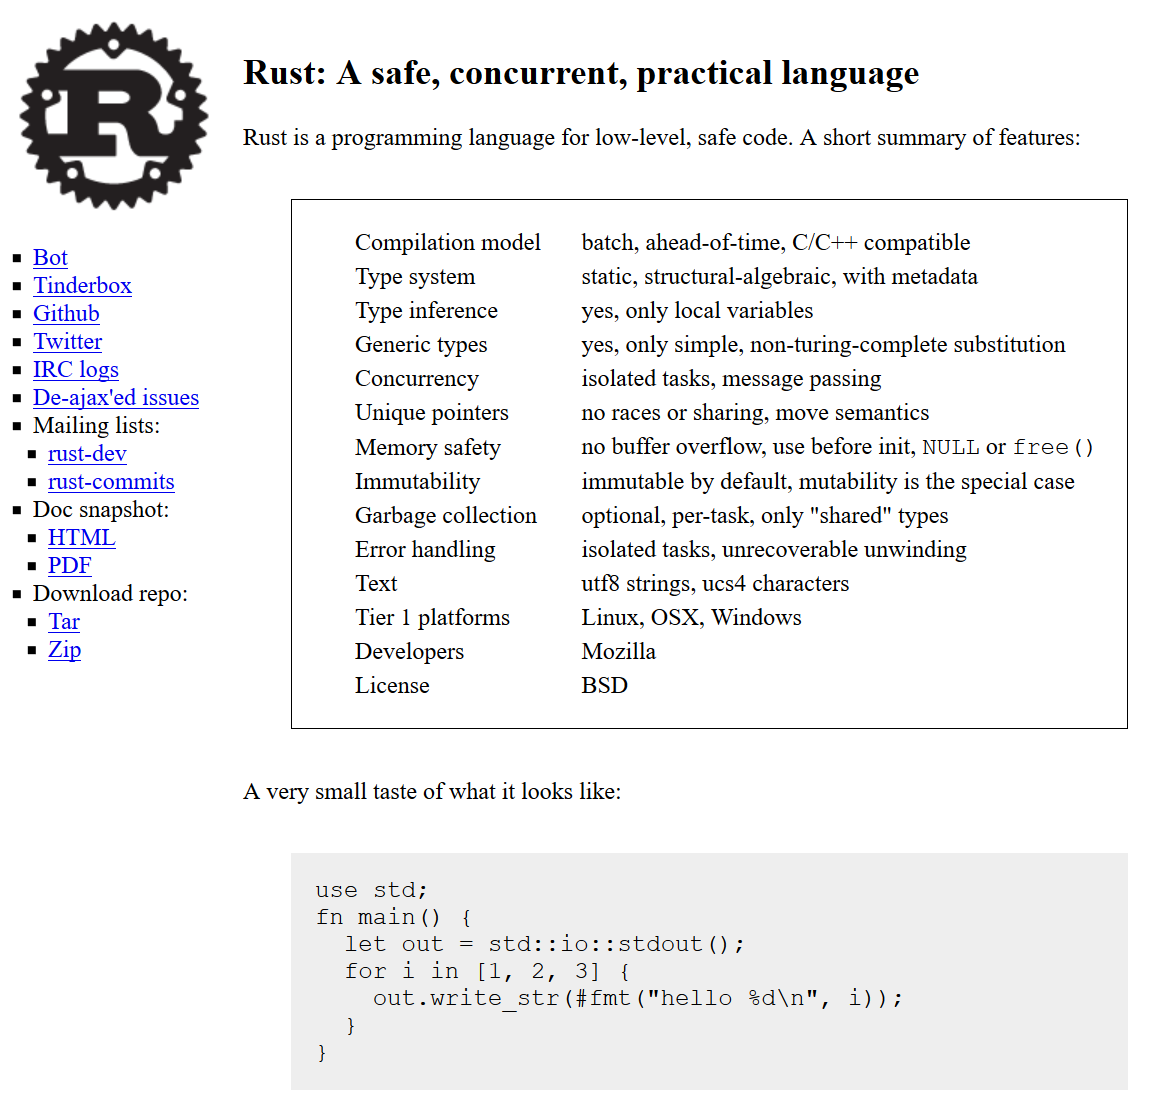 rust website in 2011